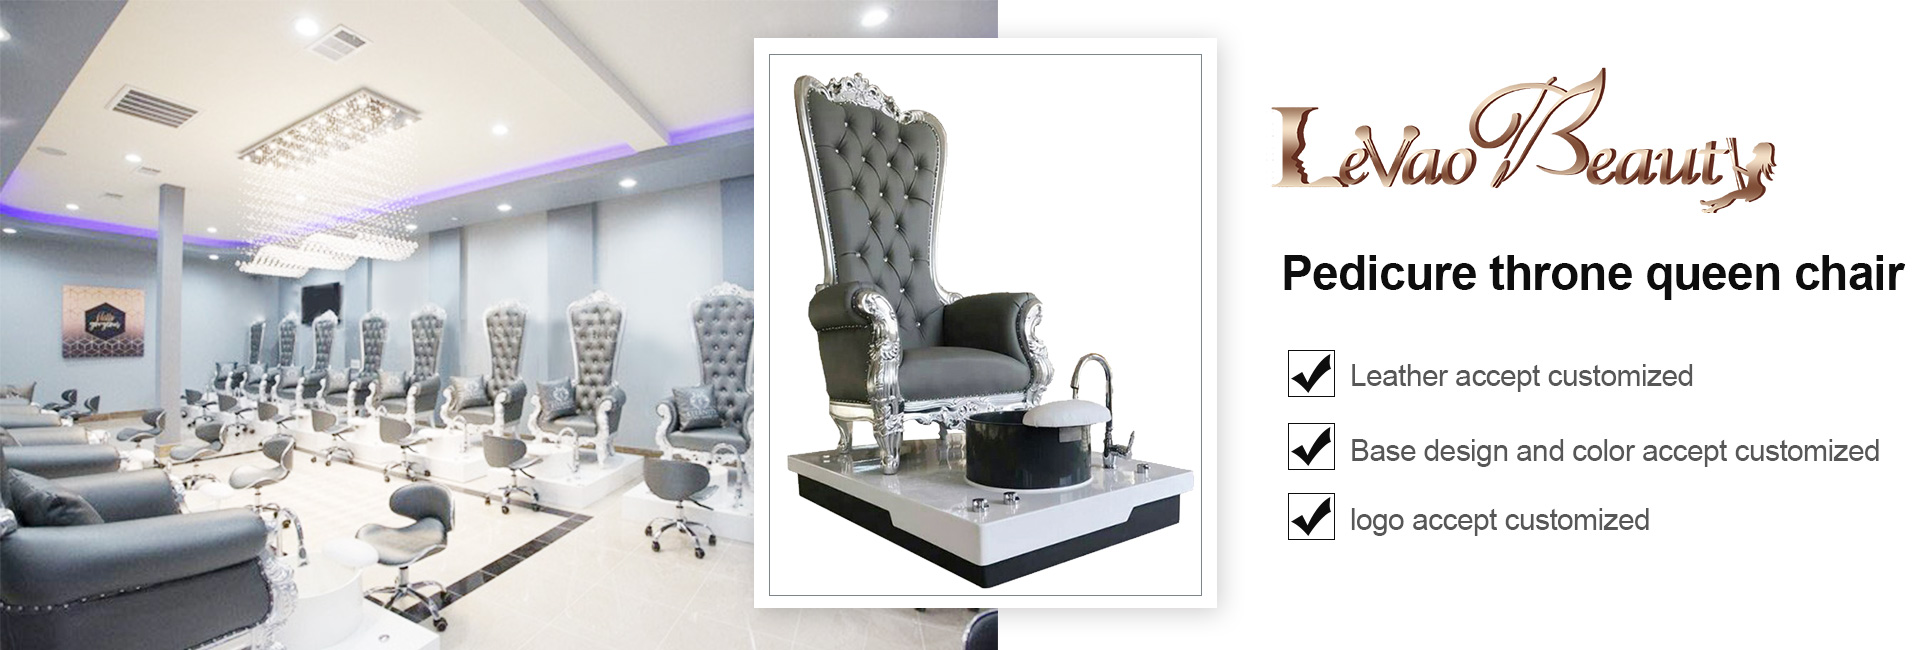 pedicure spac chair  , nail chair , pedicure throne chair  
nail salon furniture  ,foot spa chair  